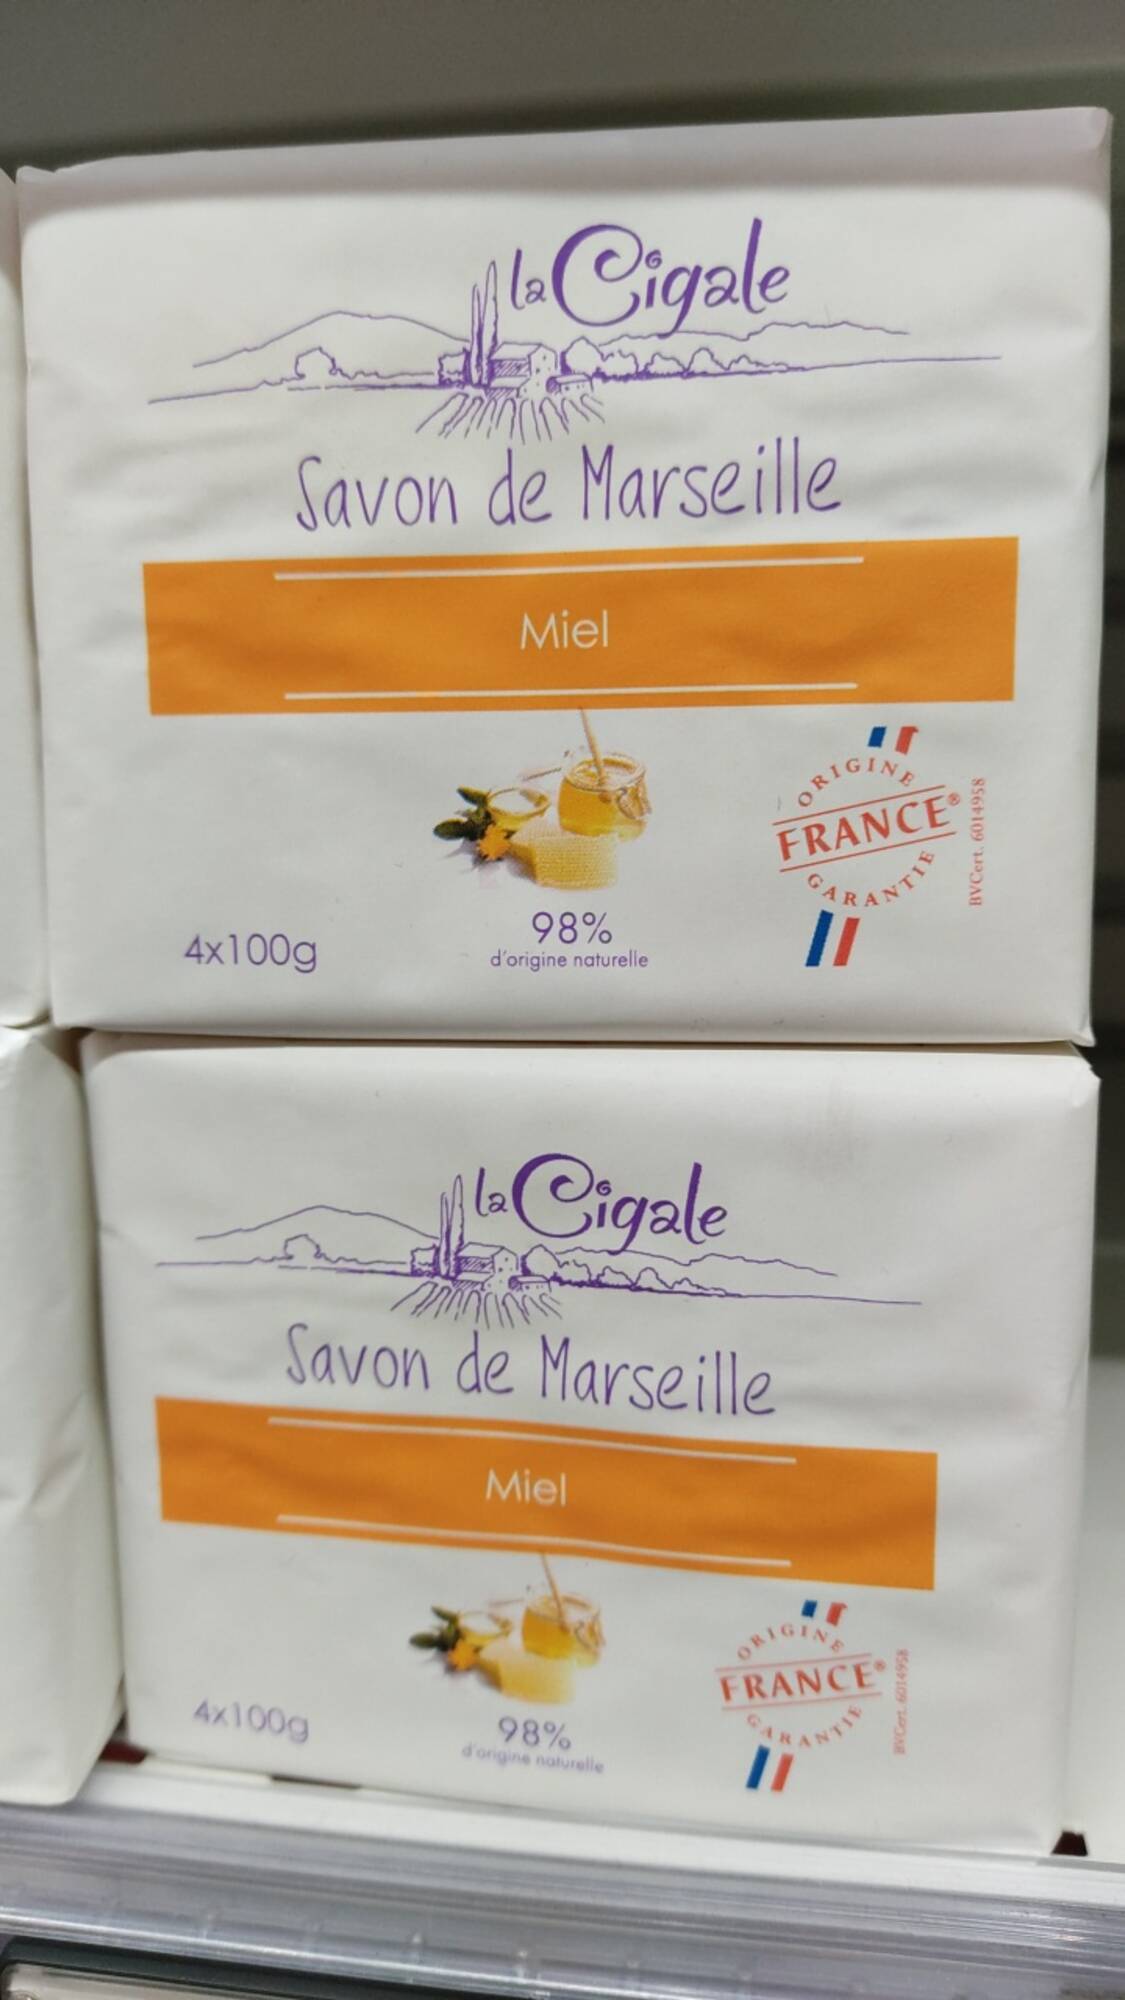 LA CIGALE - Savon de Marseille miel